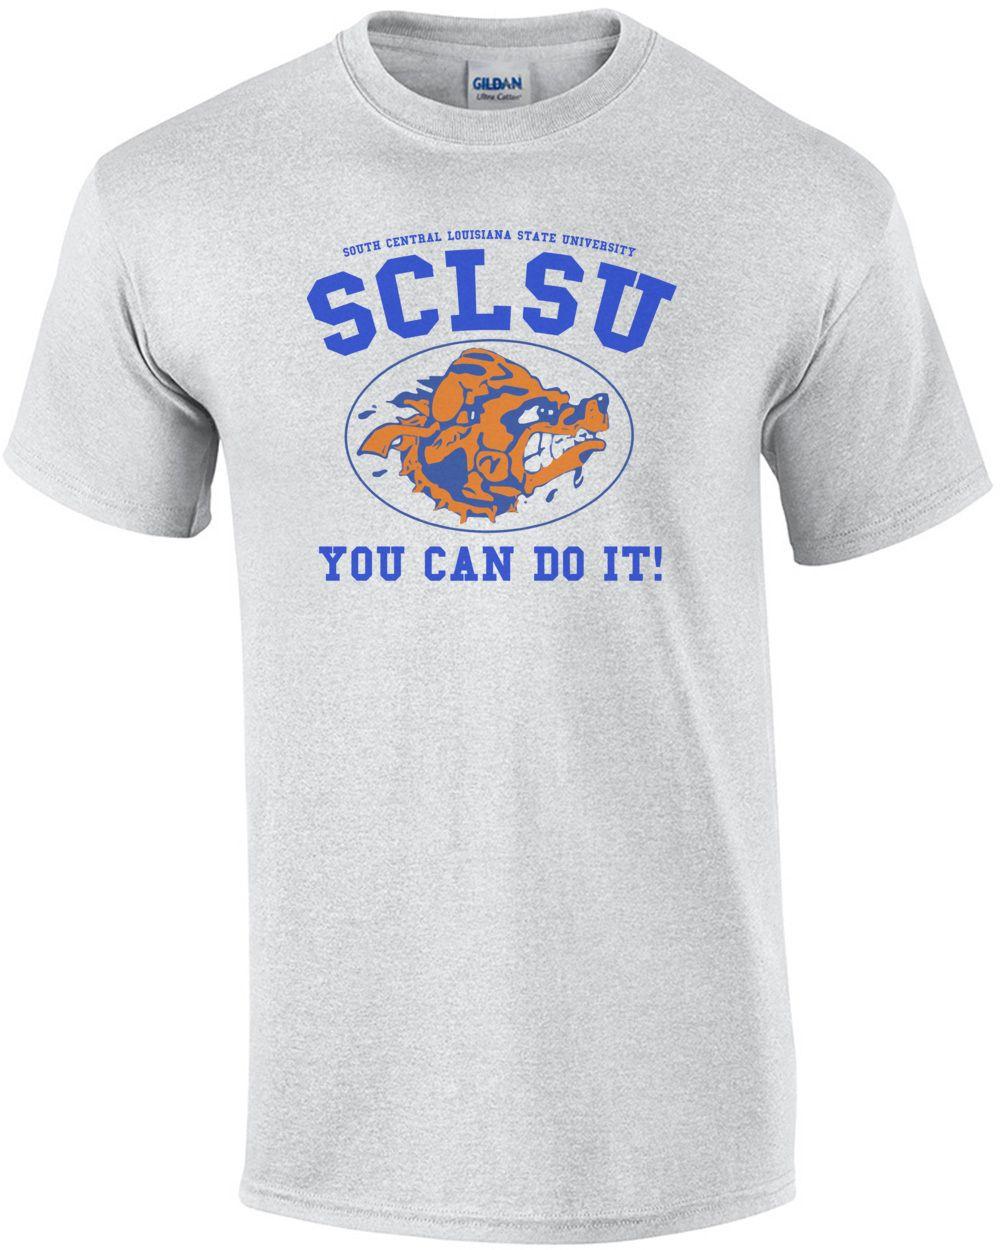 SCLSU Logo - SCLSU Can Do It! Waterboy T Shirt's T Shirt